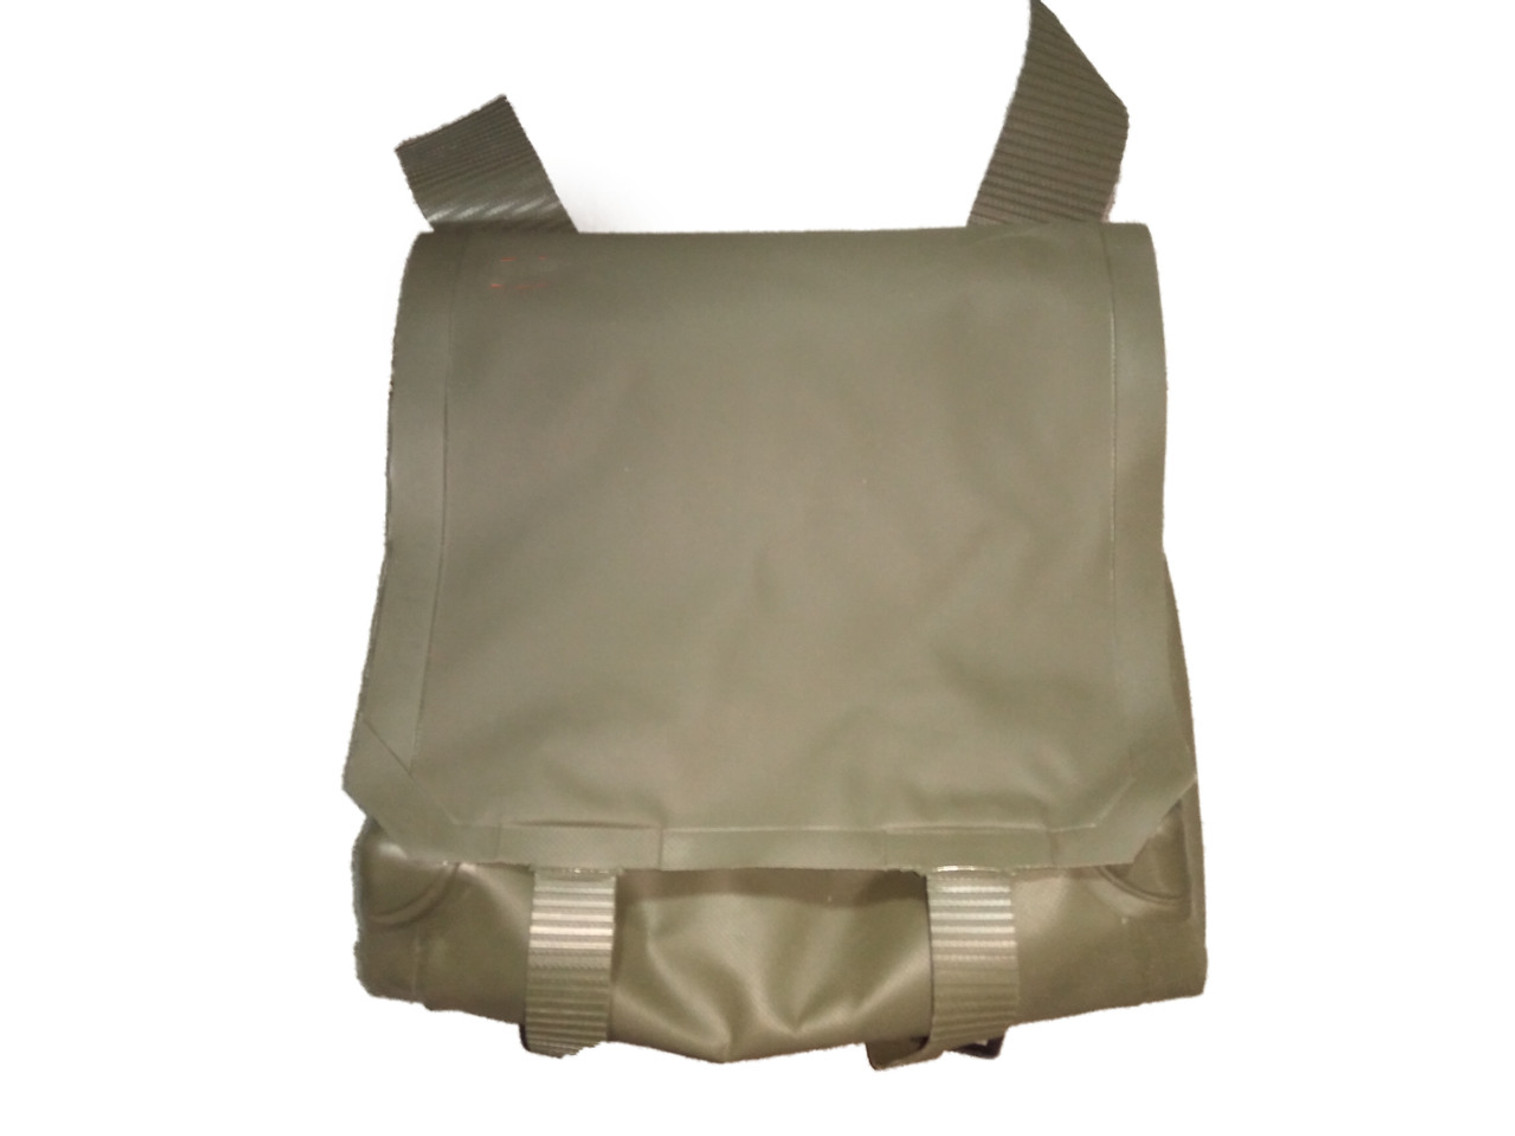 German Military Issue Waterproof Bag